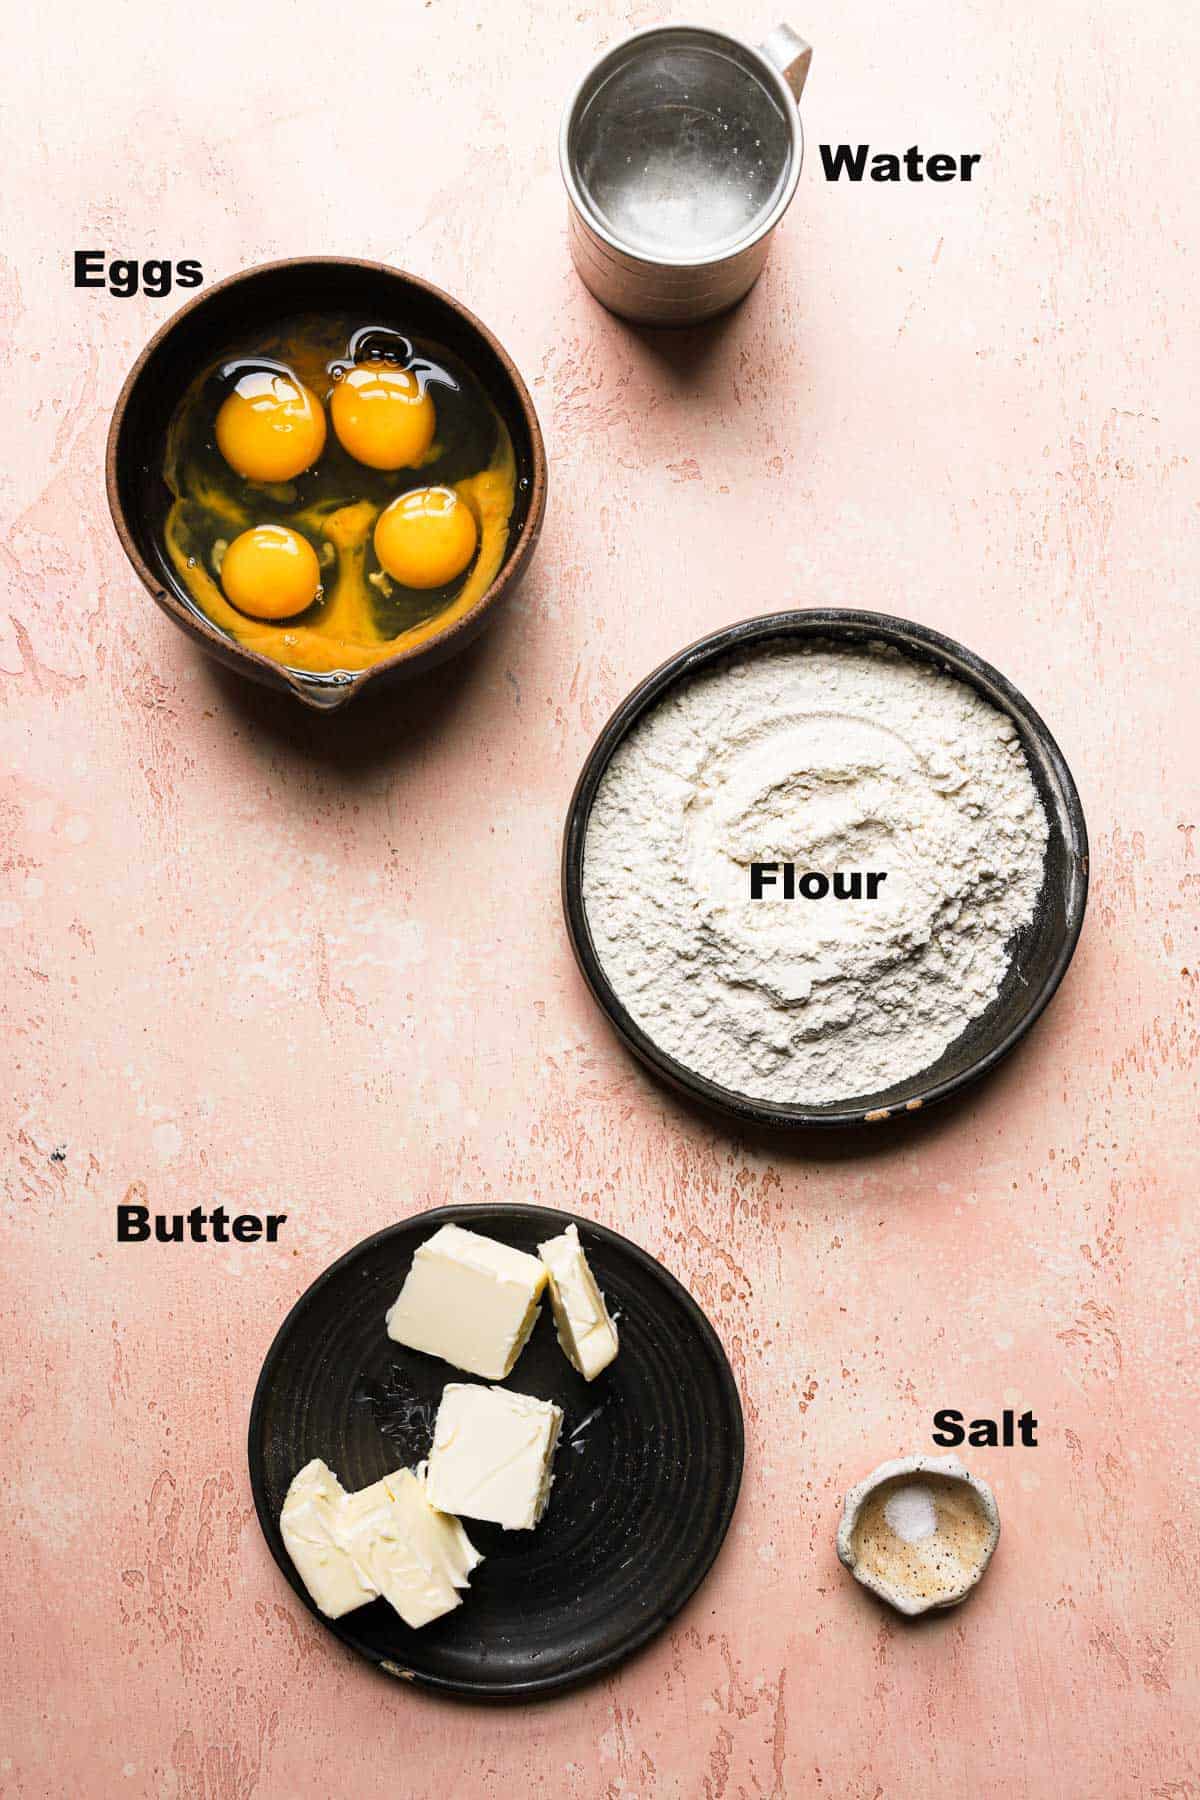 Ingredients to make choux paste